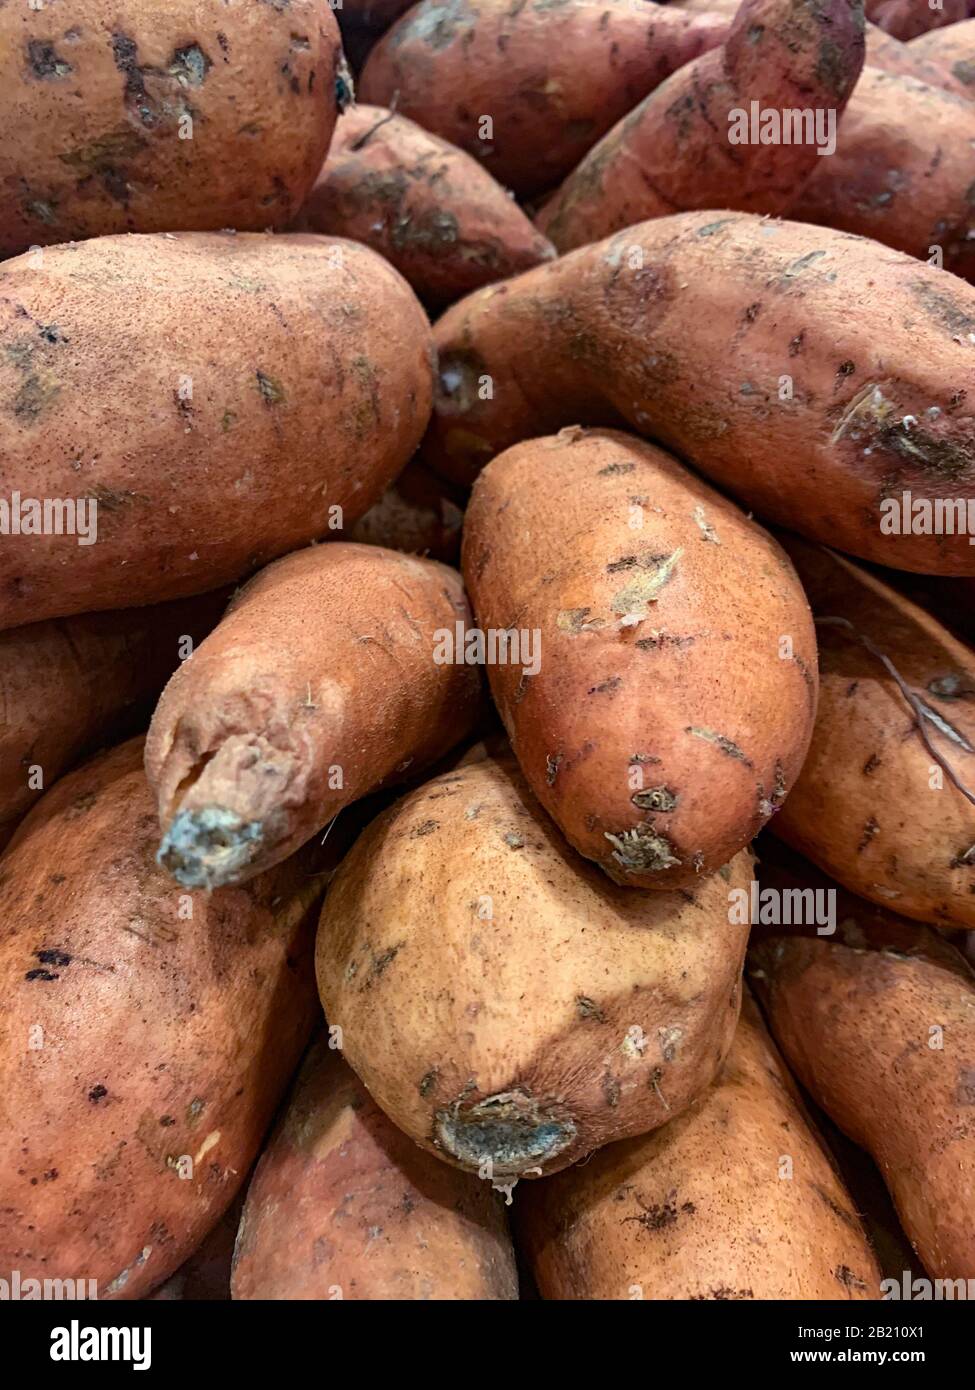 Patates douces entières brutes, légumes frais de racine saine, Panama, Amérique centrale Banque D'Images